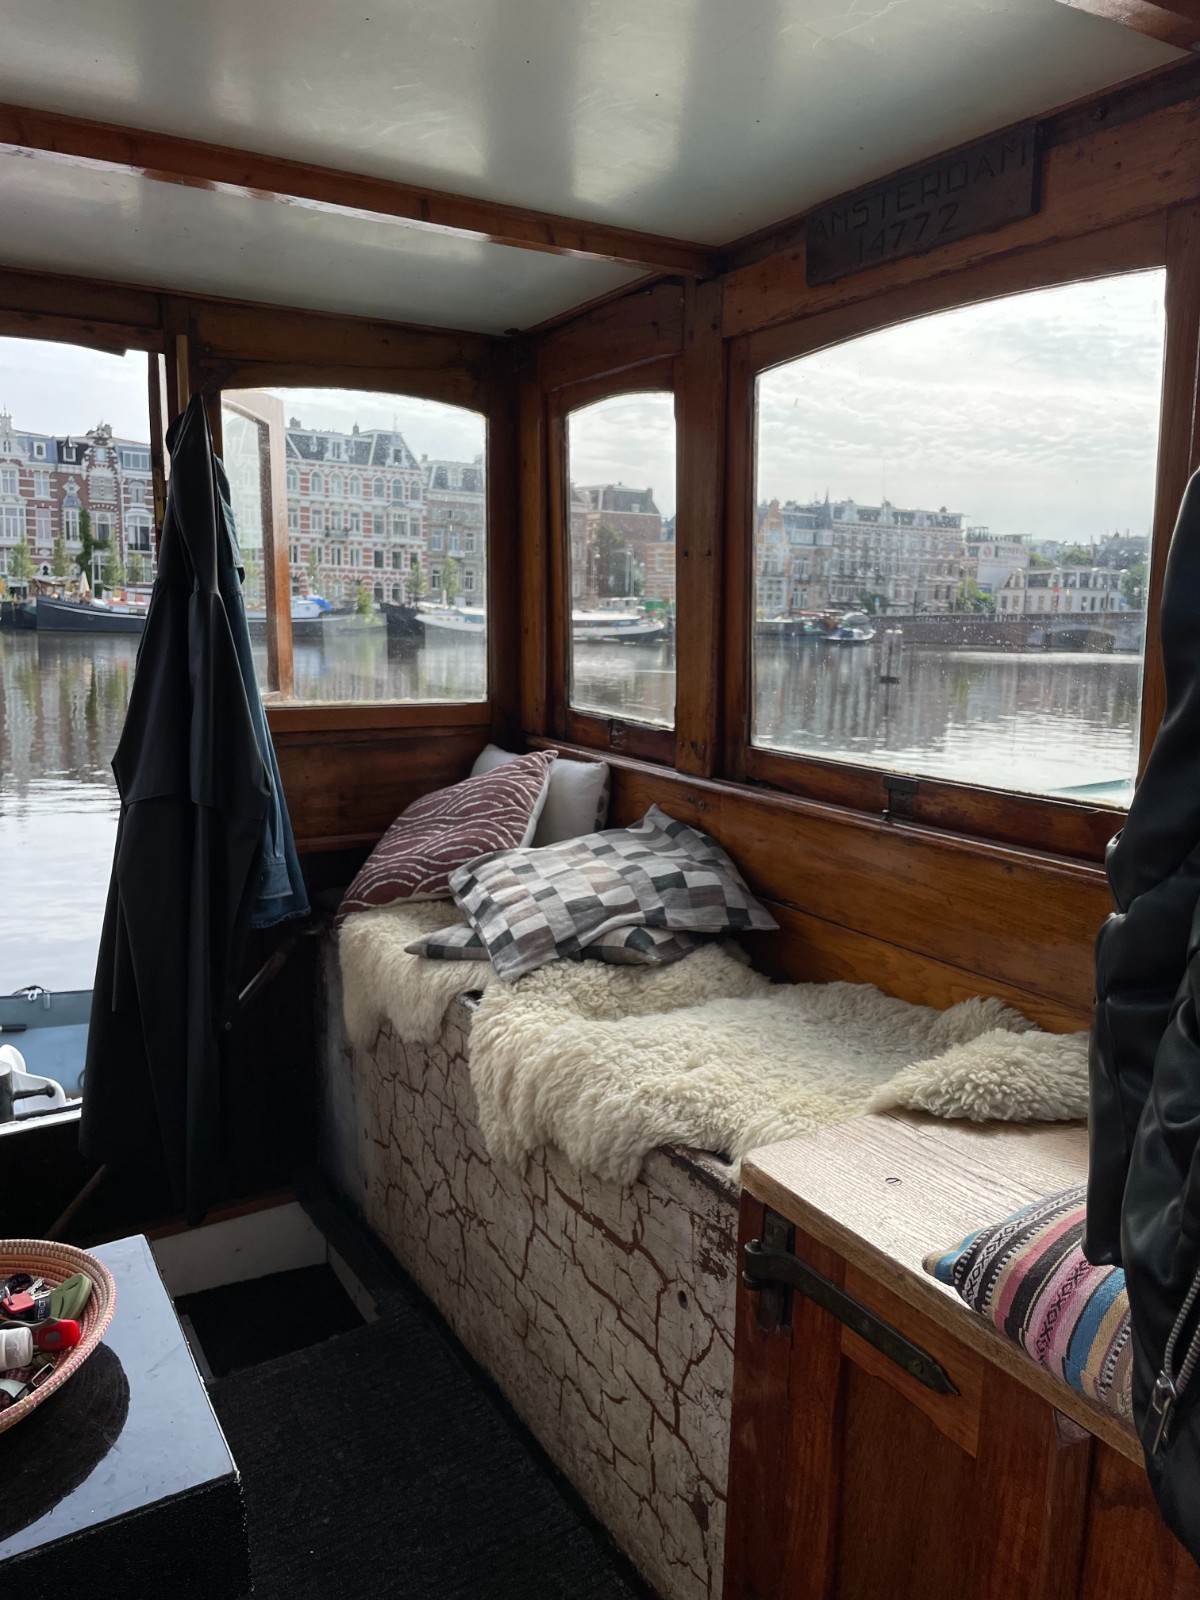 Amsteldijk 706 1074 JH, Amsterdam, Noord-Holland Netherlands, 2 Bedrooms Bedrooms, 3 Rooms Rooms,Houseboat,For Rent,Amsteldijk,1050